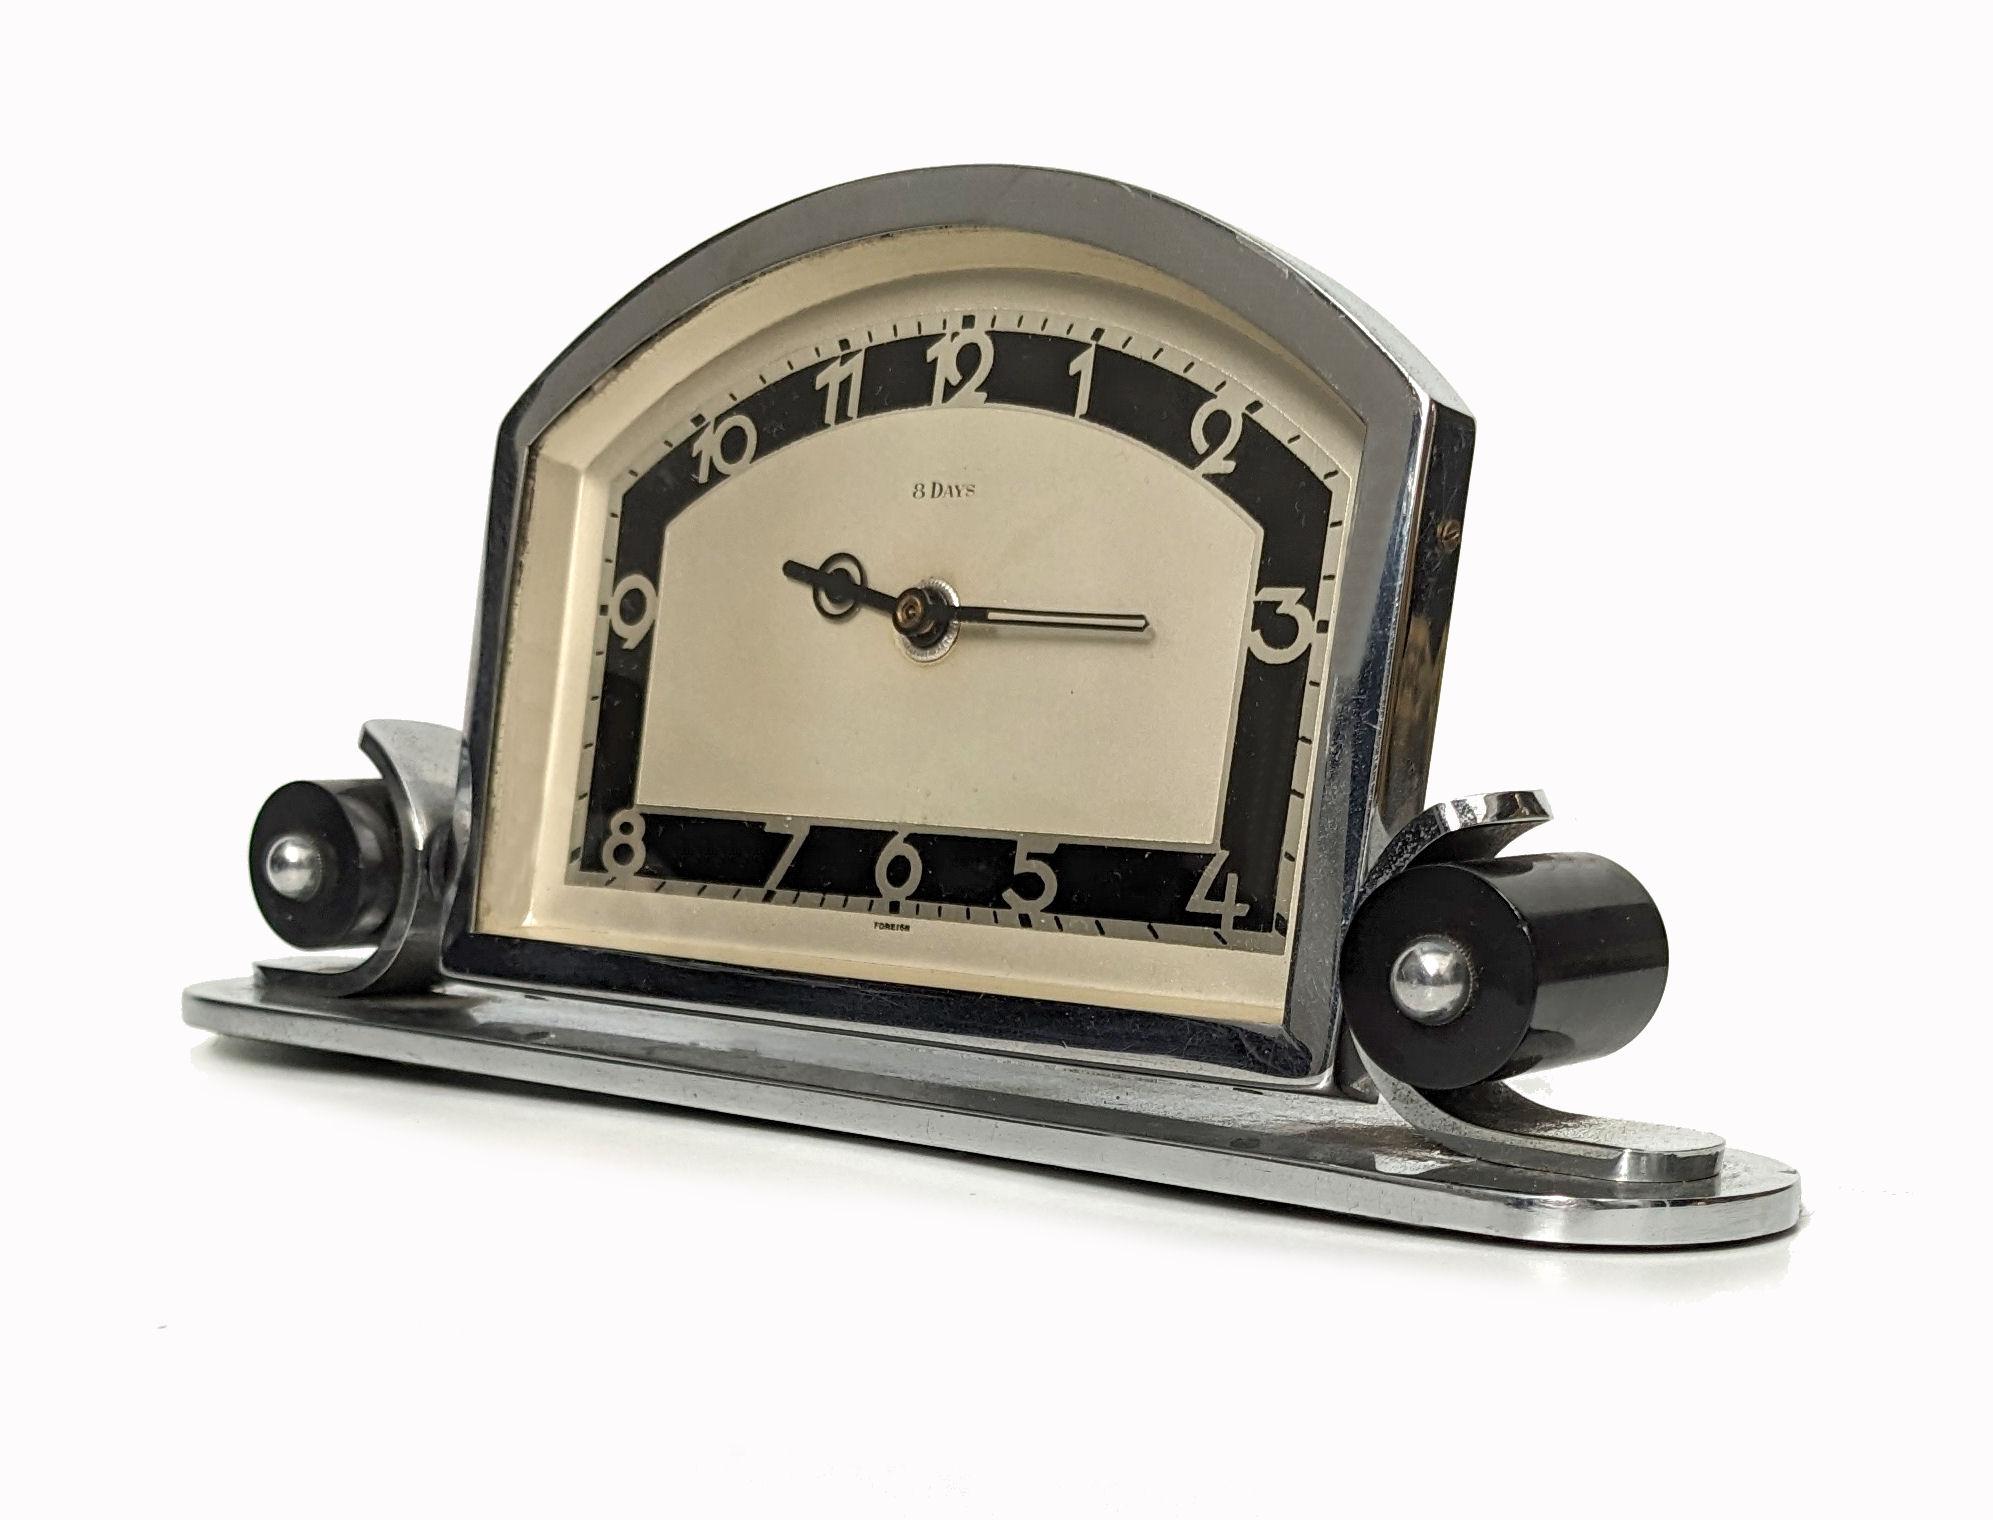 Horloge de table/de bureau Art Déco en chrome, fabriquée en Allemagne. Mouvement manuel à remontage 8 jours qui a fait l'objet d'une révision et qui est donc en bon état de marche. Il est en très bon état cosmétique pour ses 90 ans et quelques, le